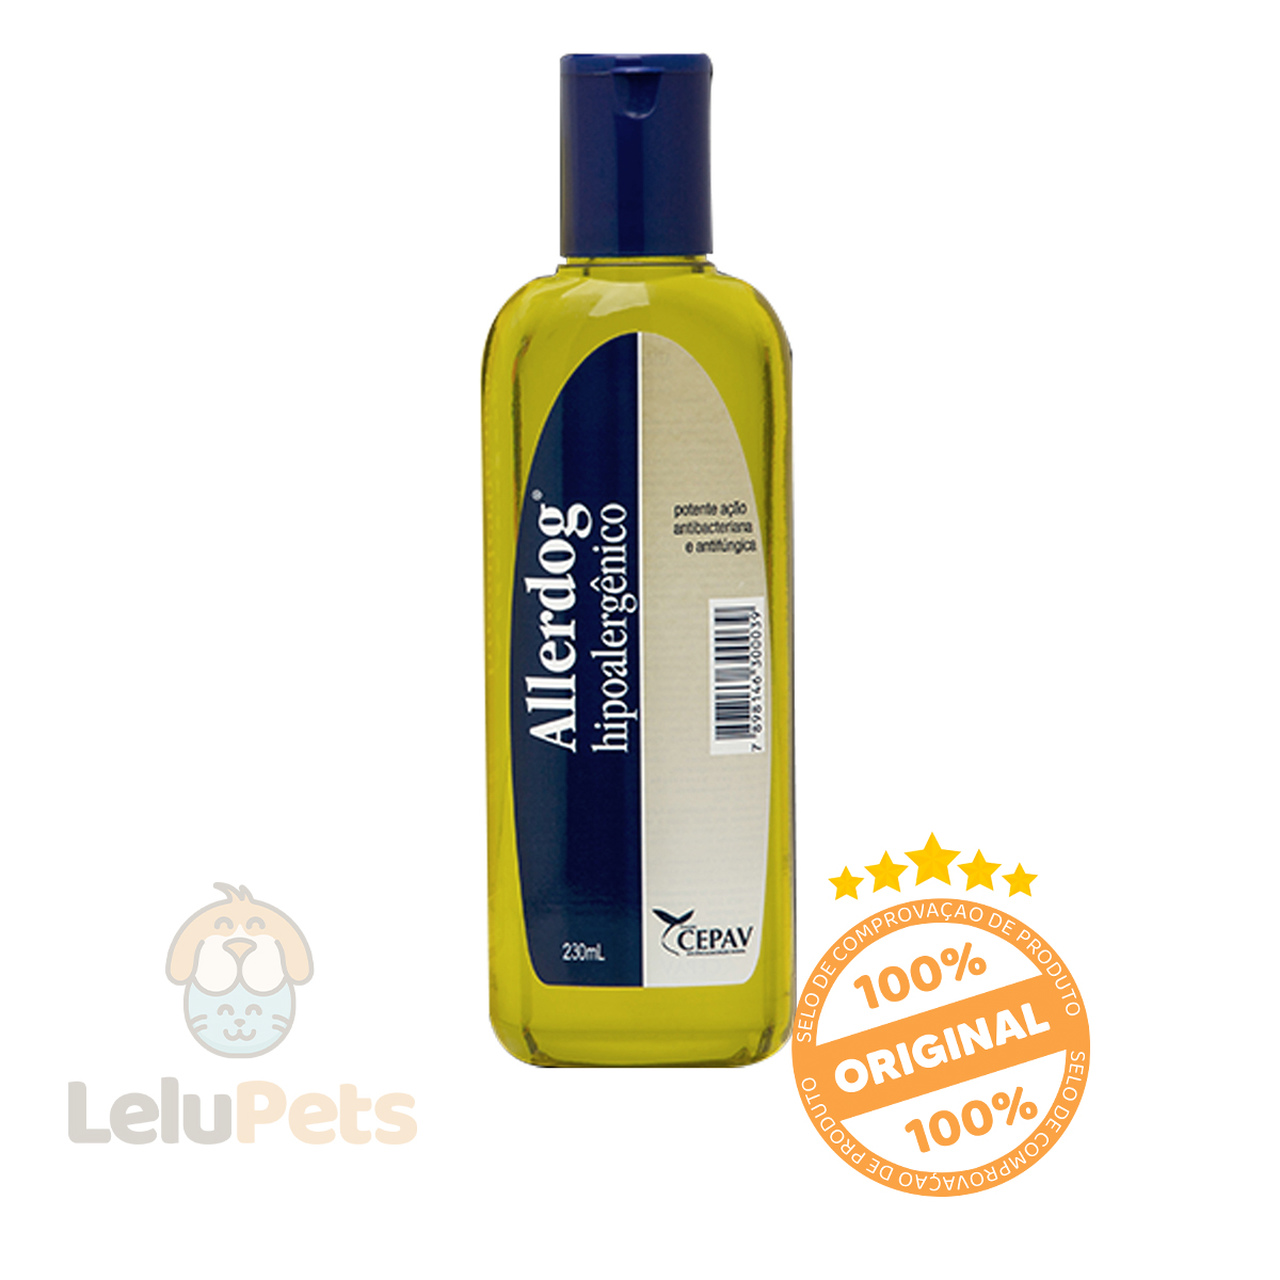 Shampoo Allerdog Hipoalergenico 230 ml